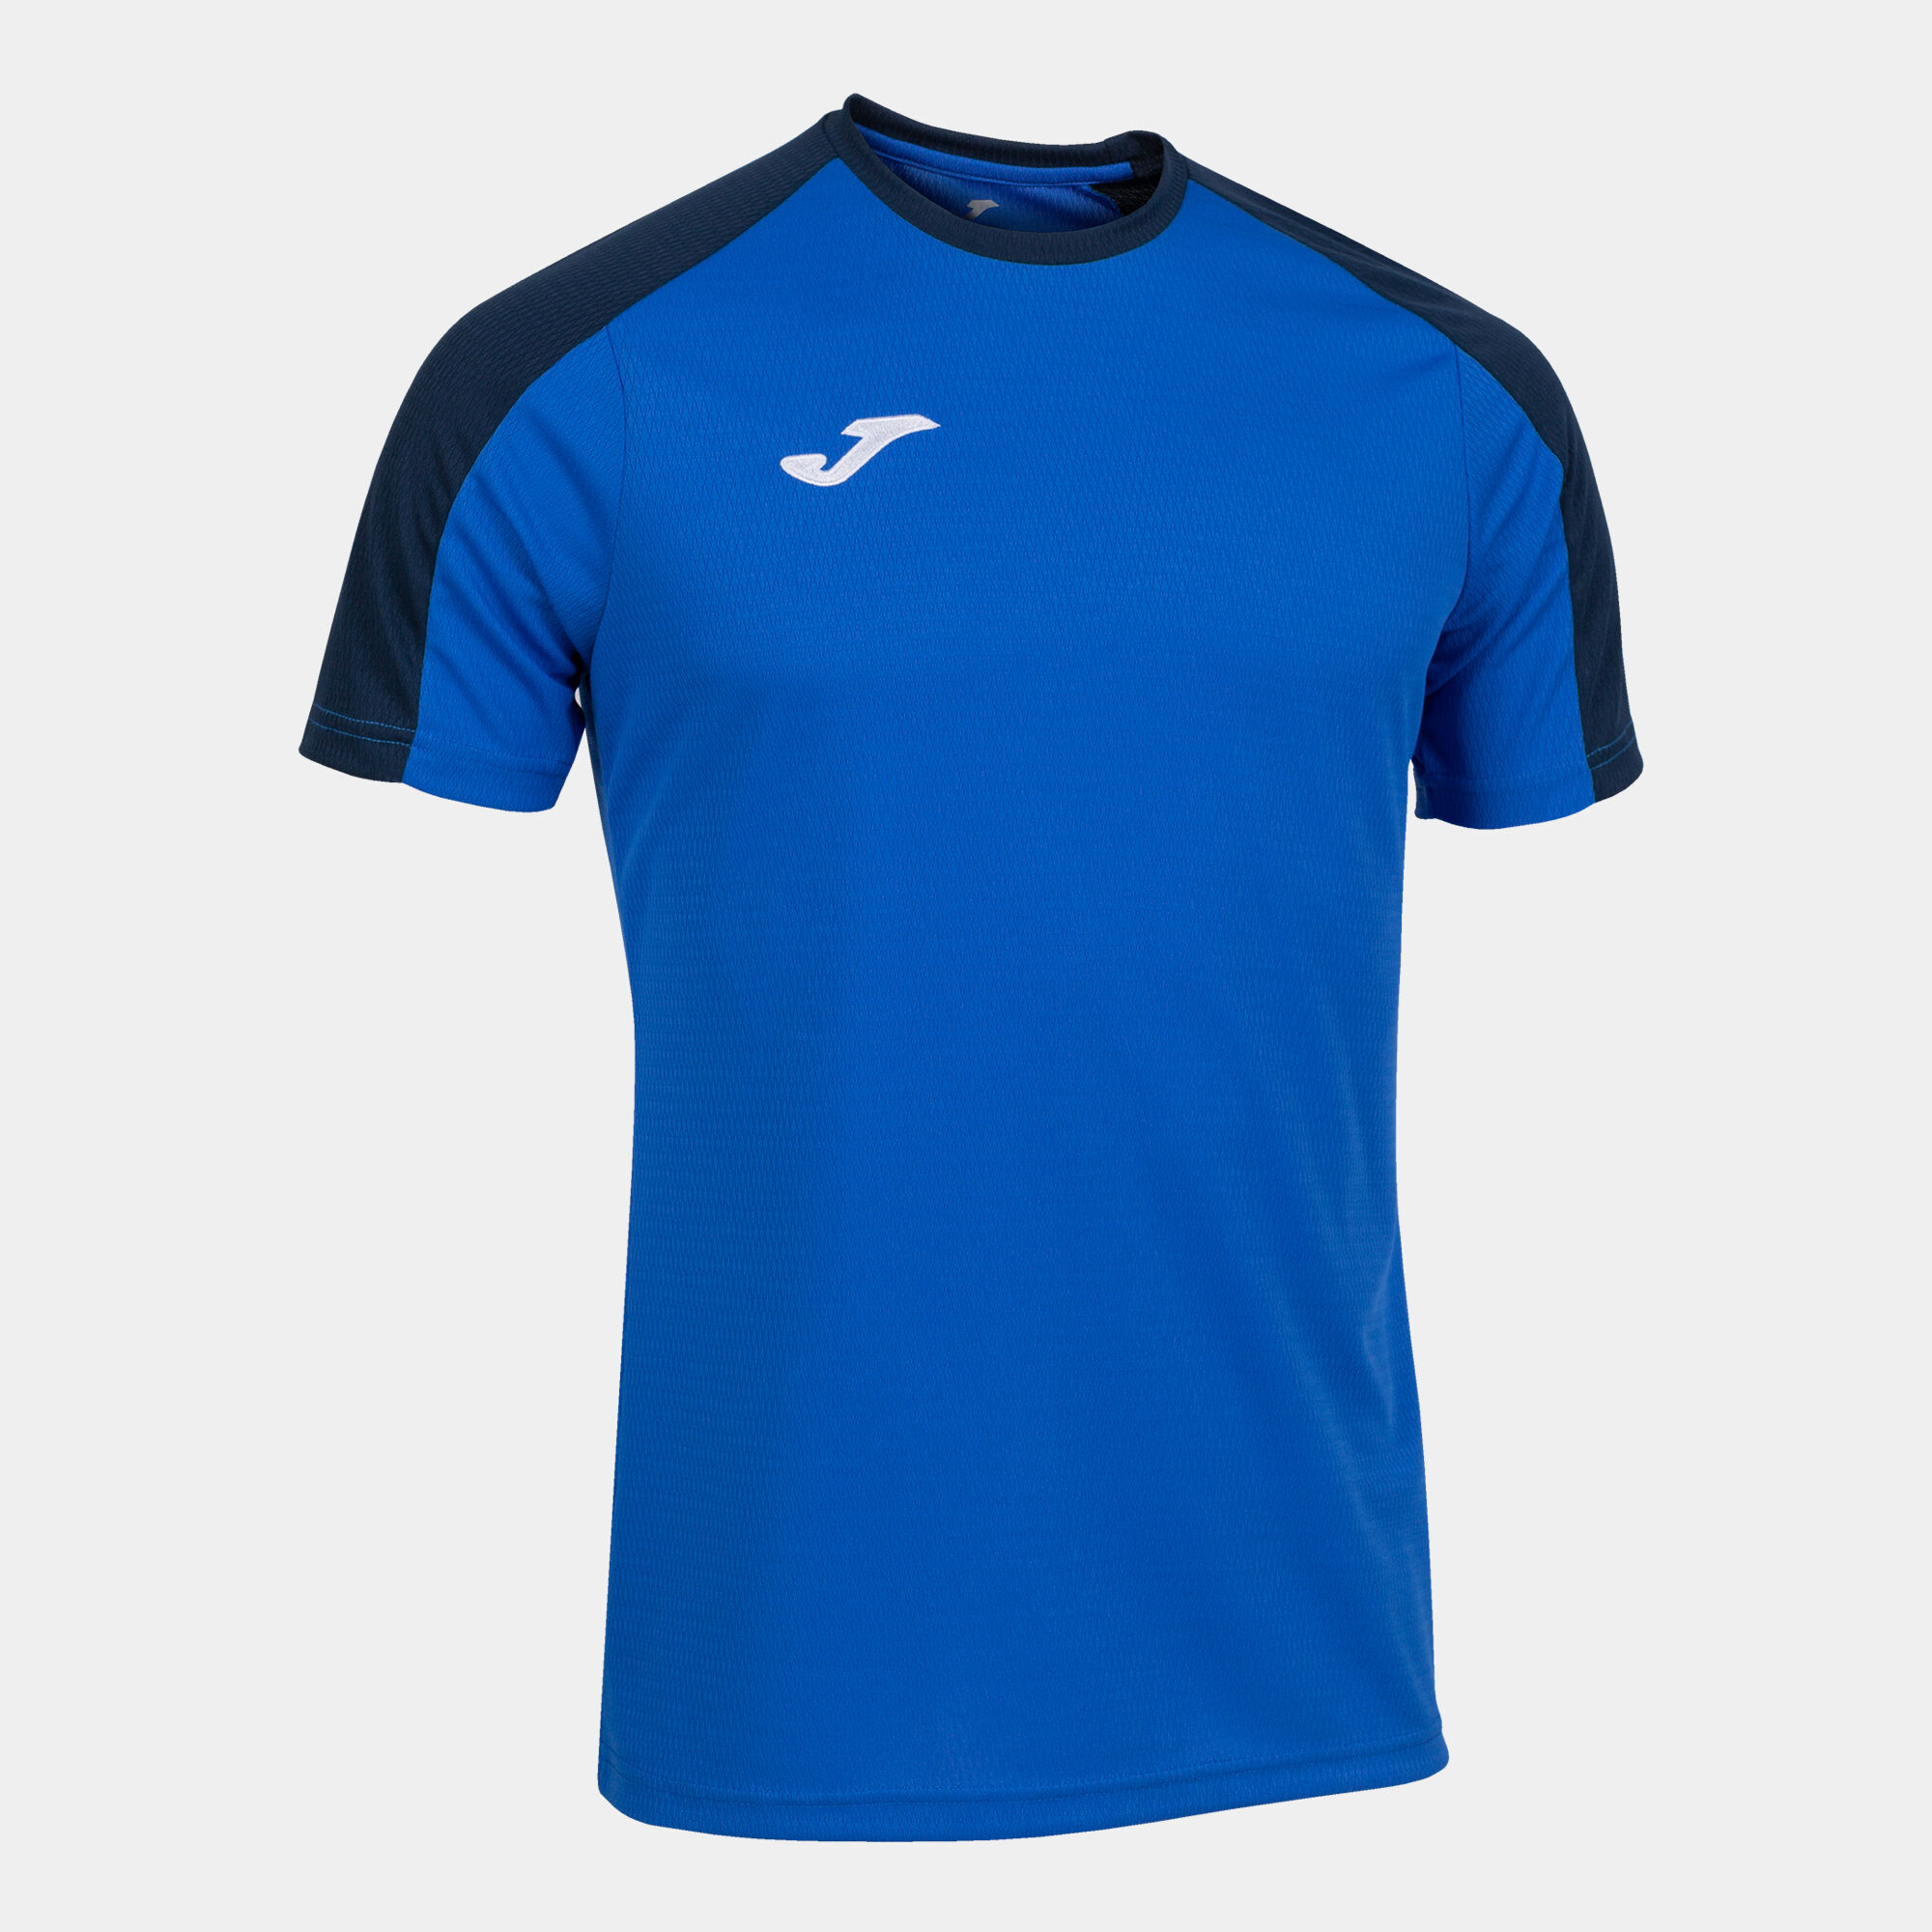 Волейбольна футболка чоловіча Joma ECO CHAMPIONSHIP Синій/Темно-синій